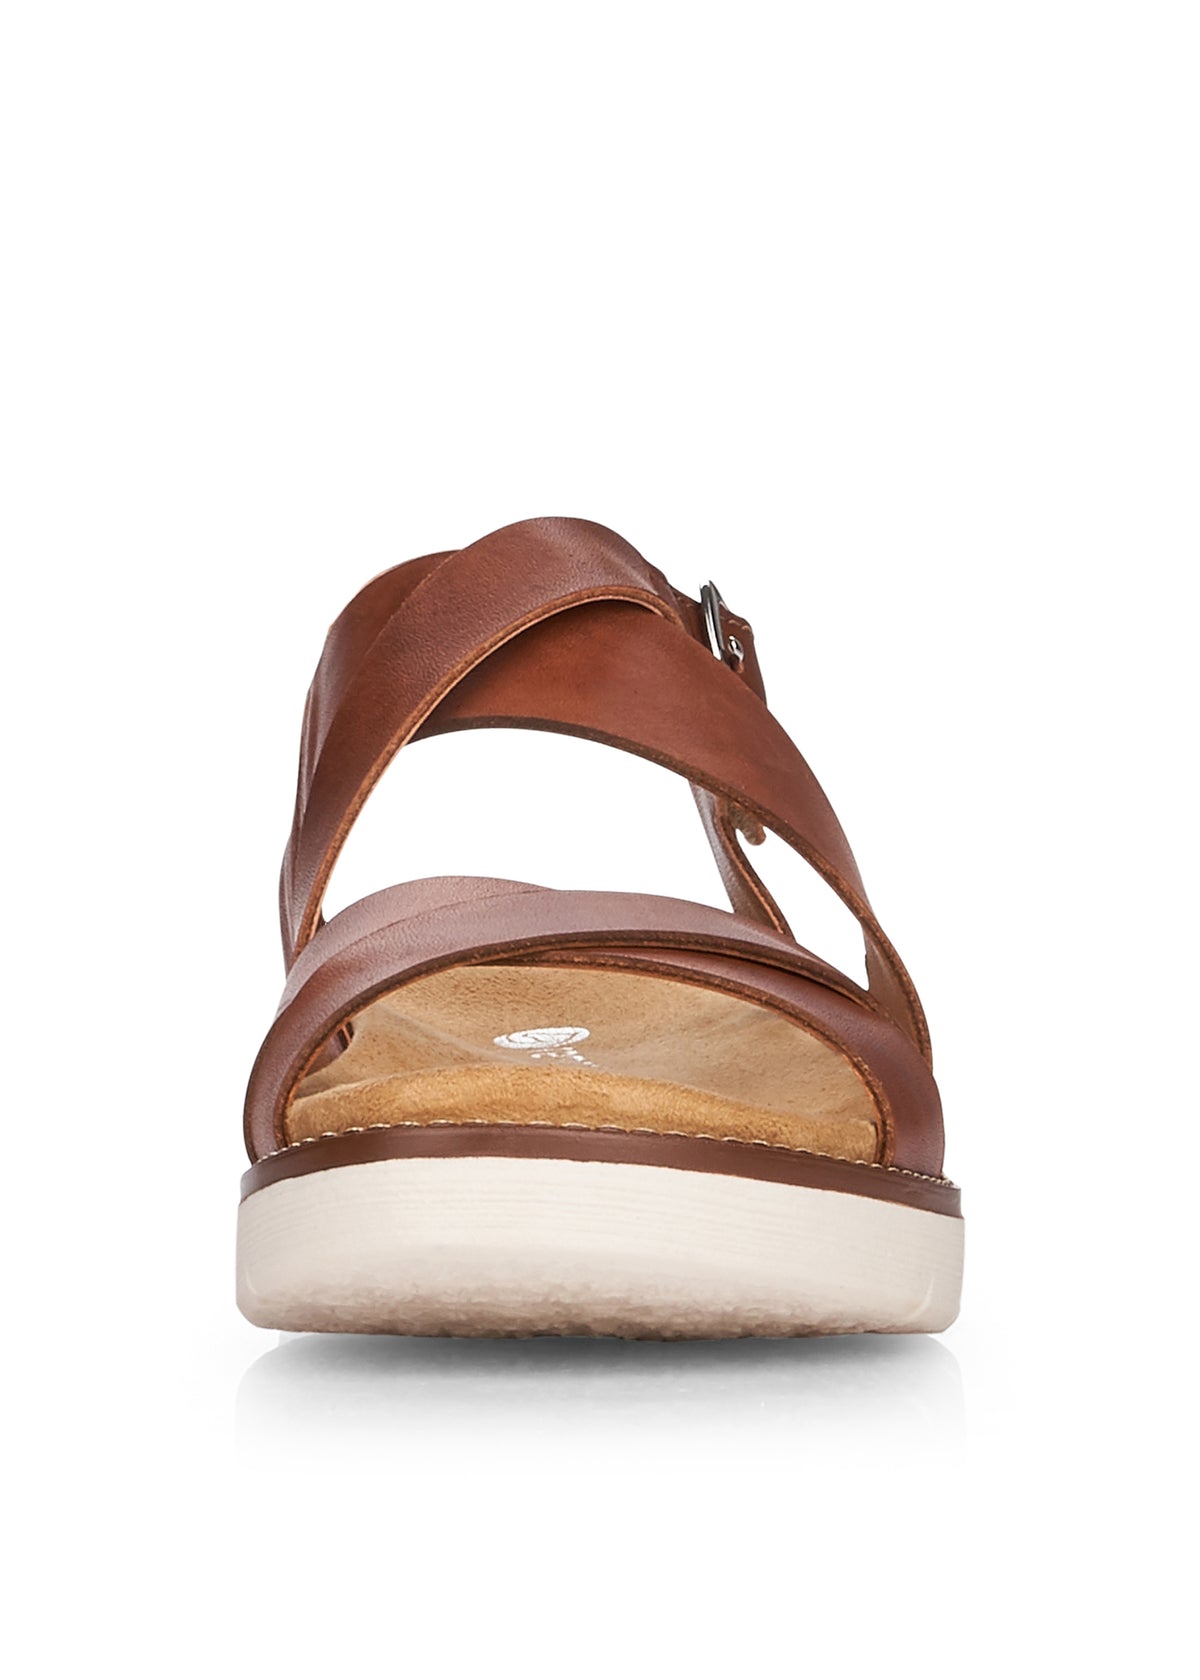 Sandaler med remmar - brunt läder, ljus sula